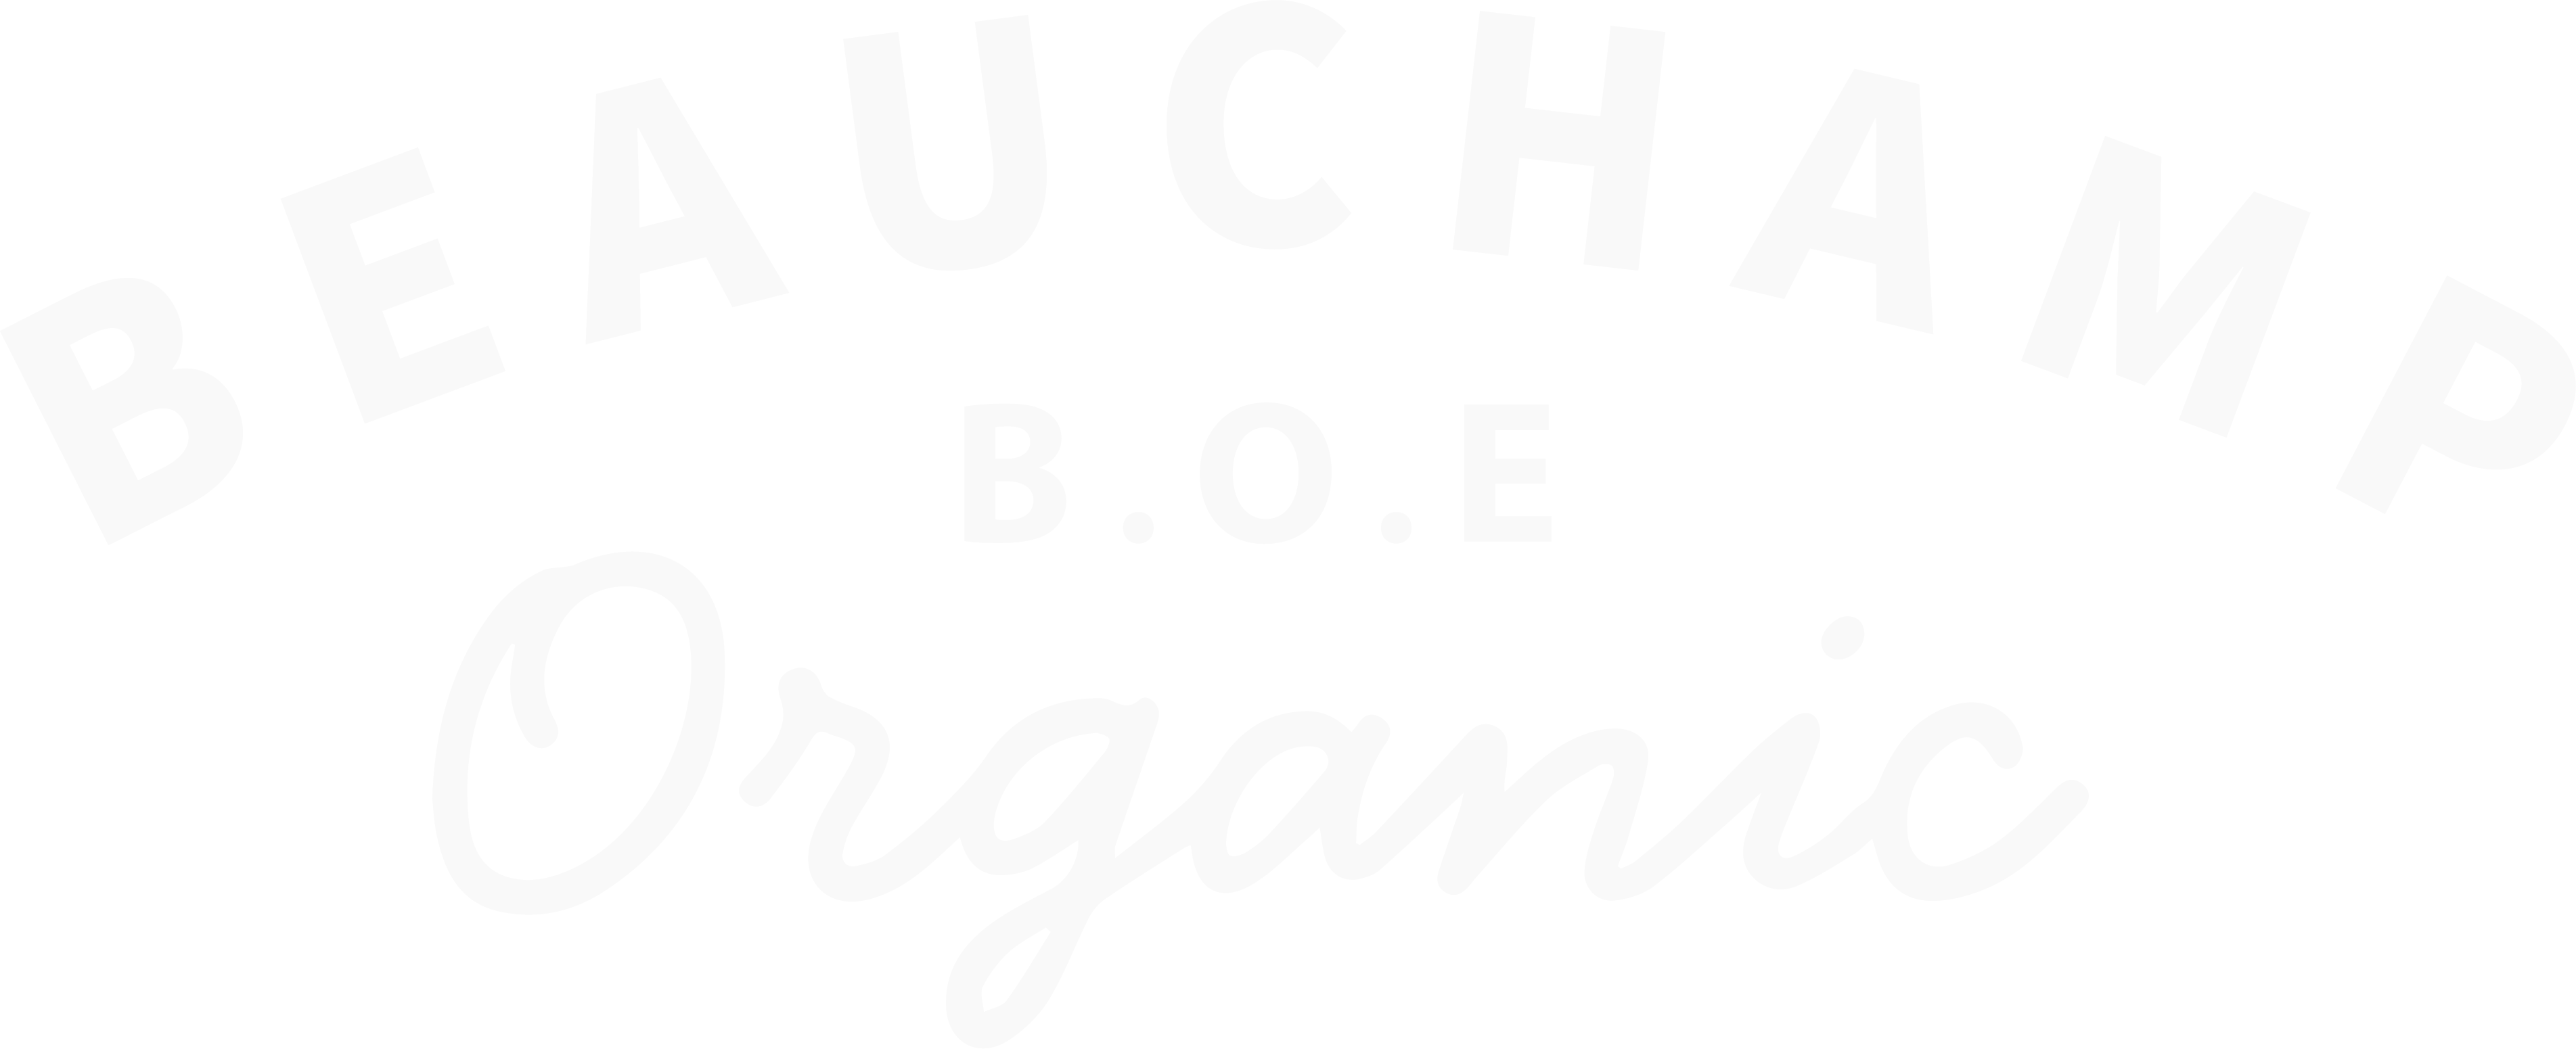 Beauchamp Organic Eggs